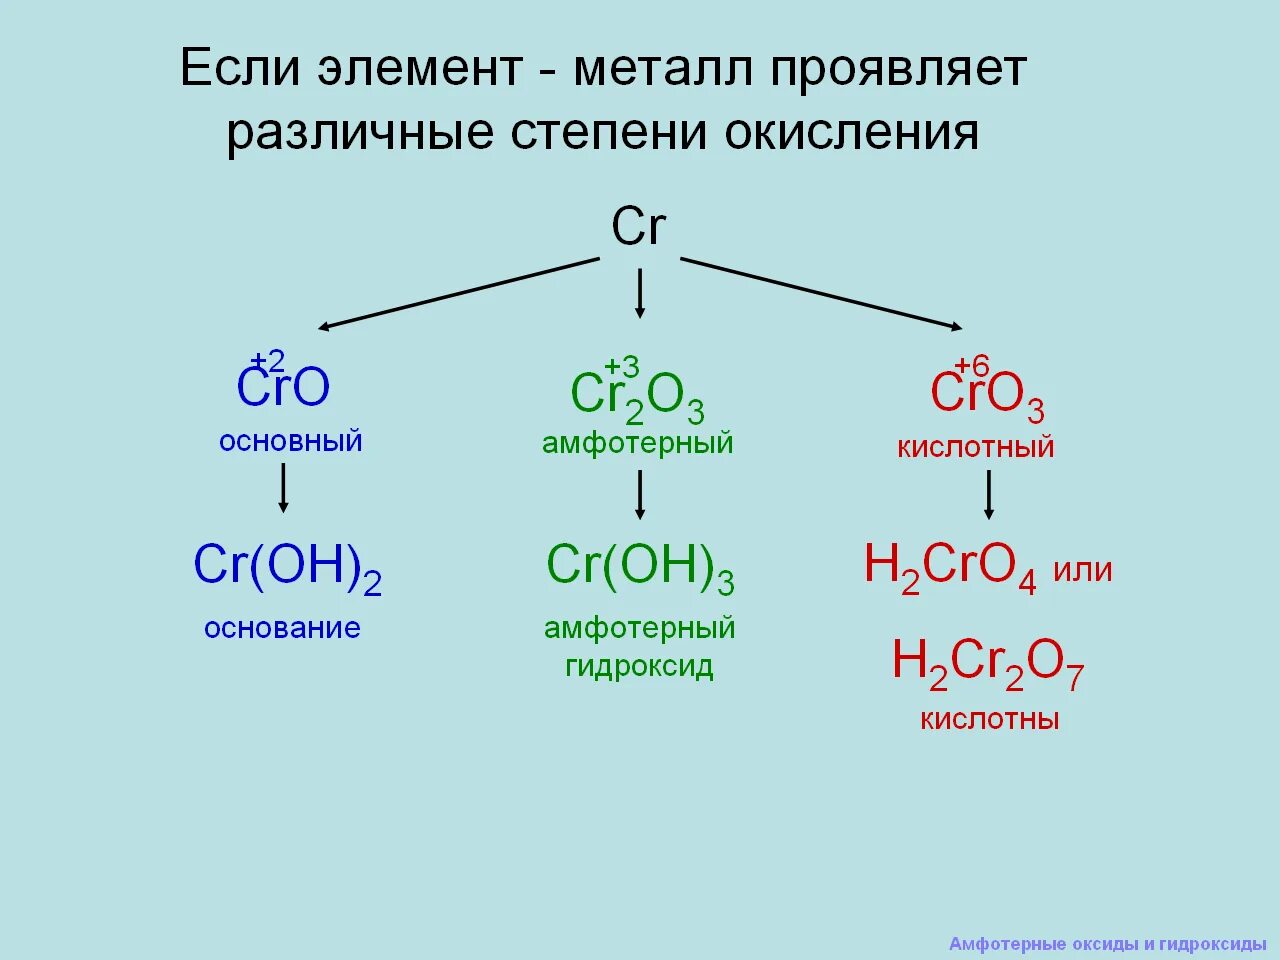 Амфотерные оксиды и гидроксиды 9 класс объяснение. Химия 8 класс амфотерные гидроксиды. Химия 9 класс амфотерные оксиды. Амфотерные оксиды и гидроксиды 8 класс конспект. Как отличить амфотерные